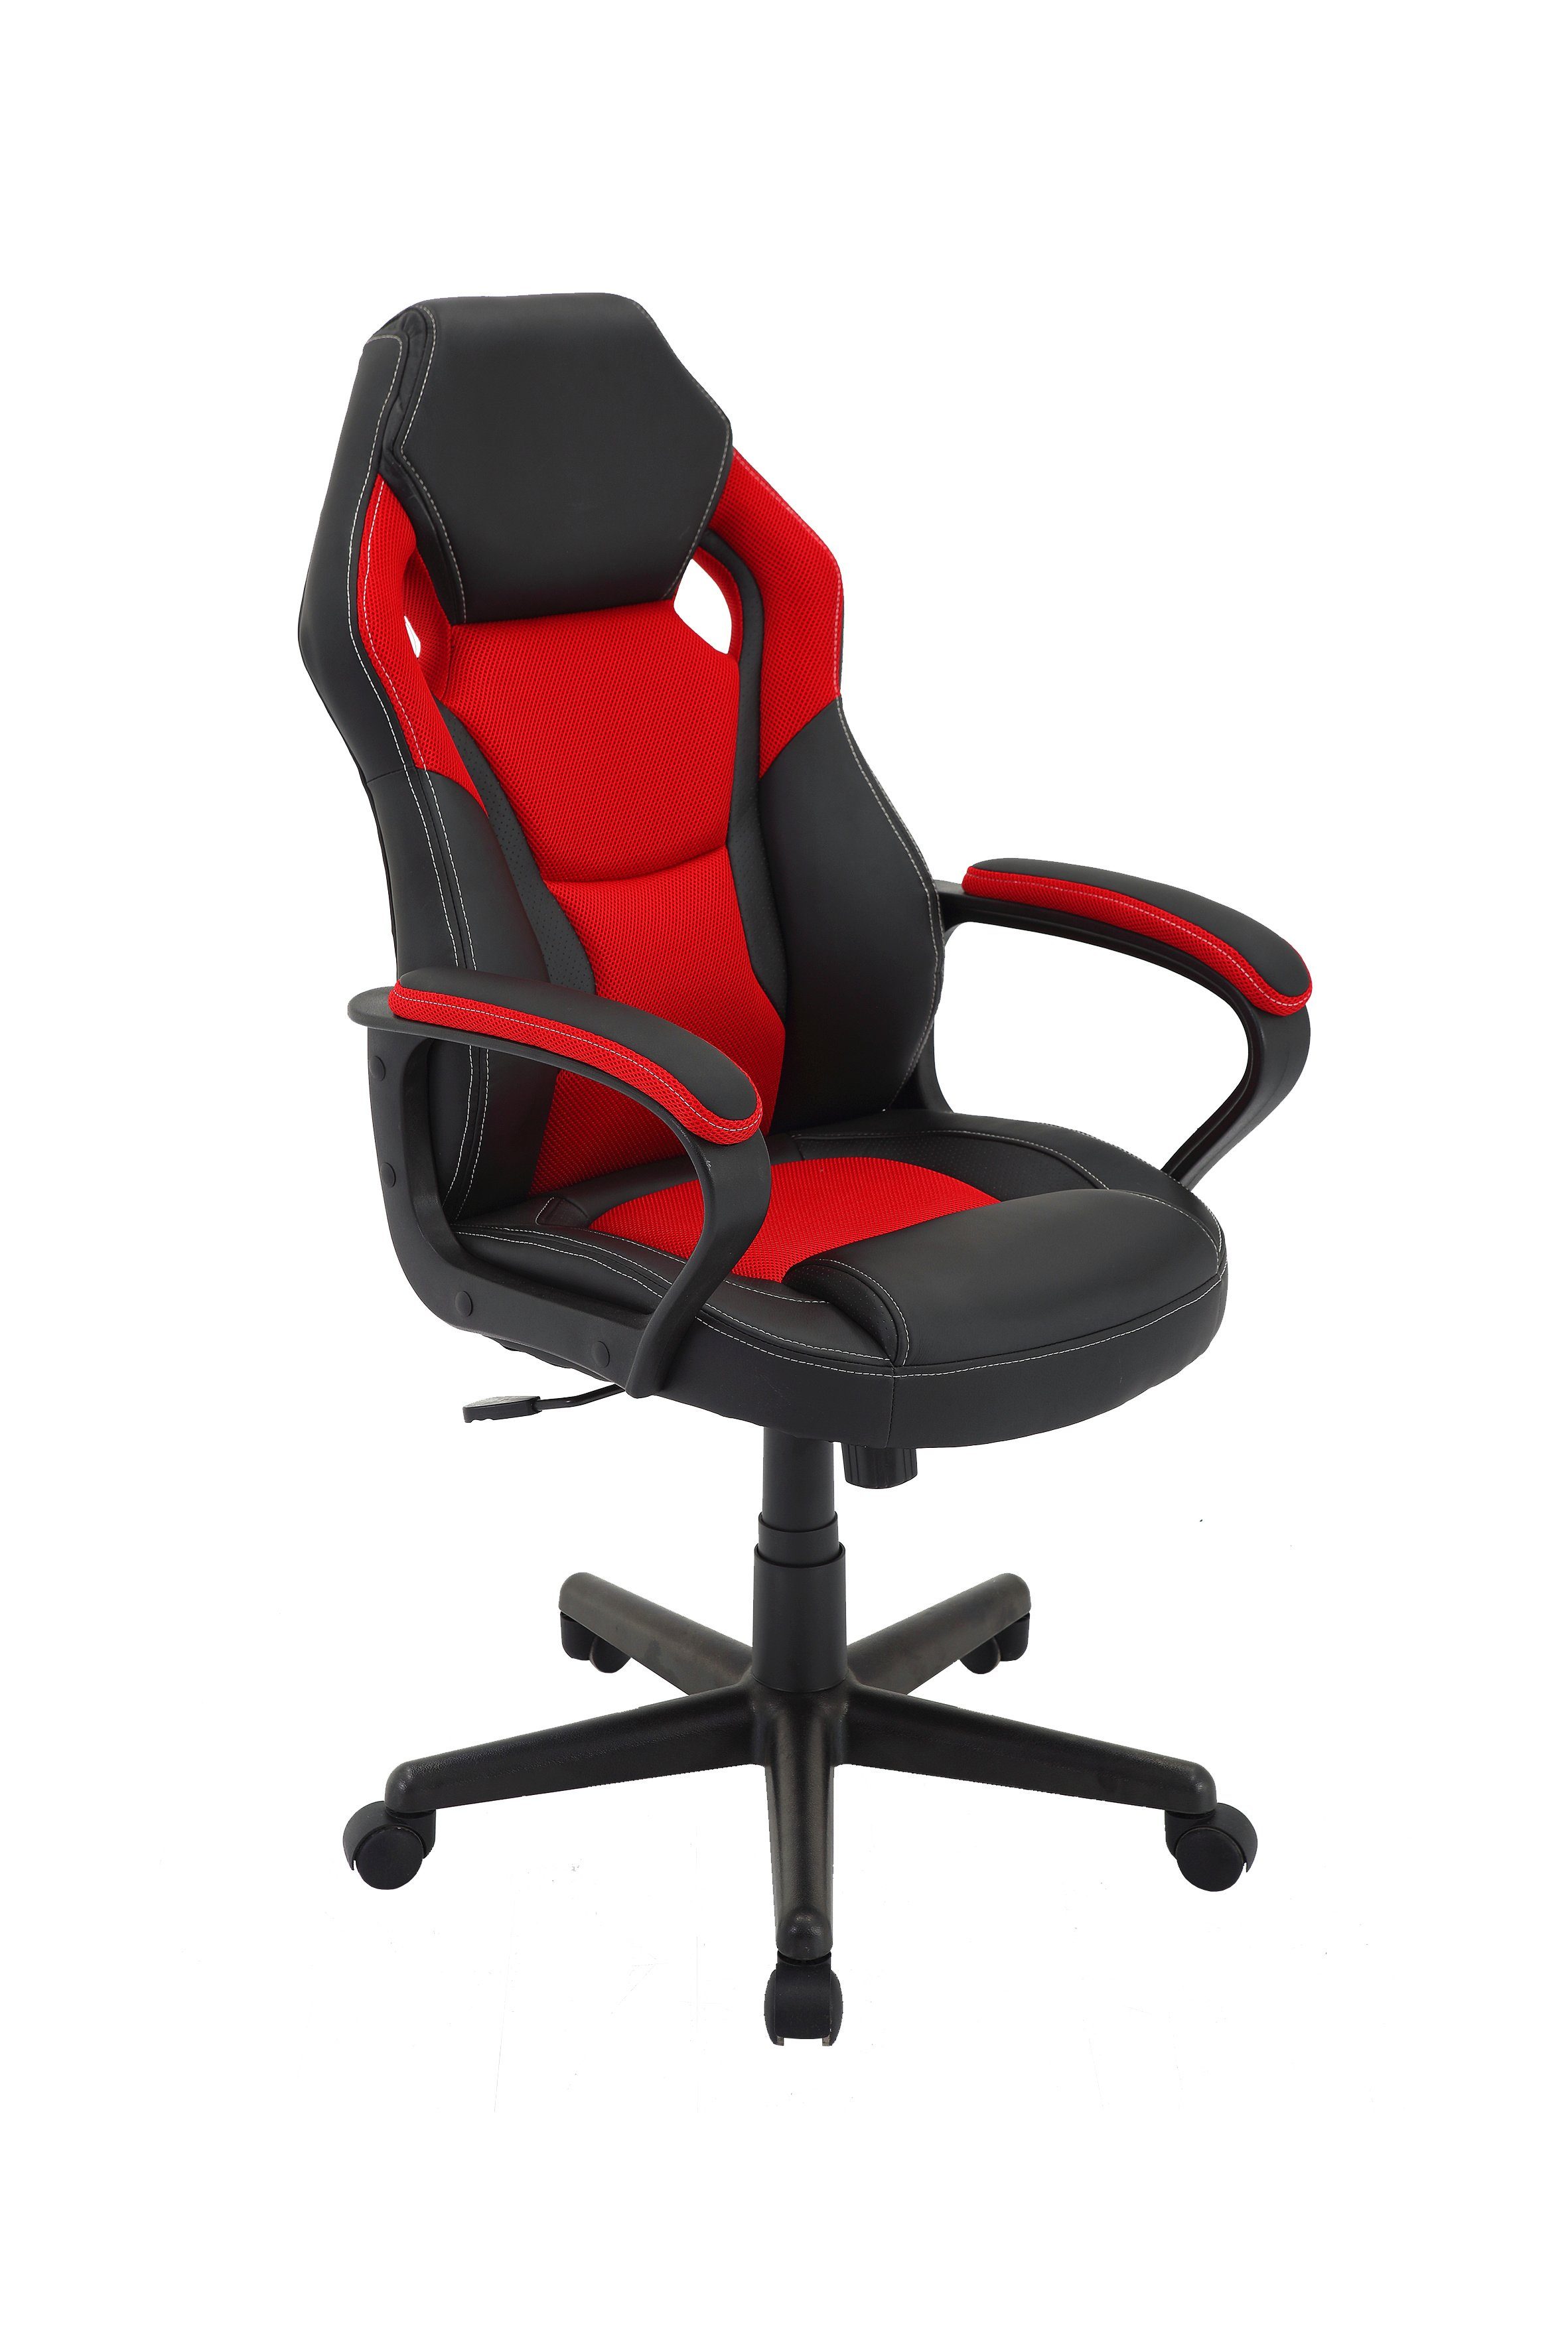 byLIVING Gaming-Stuhl schwarz/rot Farben verschiedenen verstellbarer Matteo, Chair, in Gaming